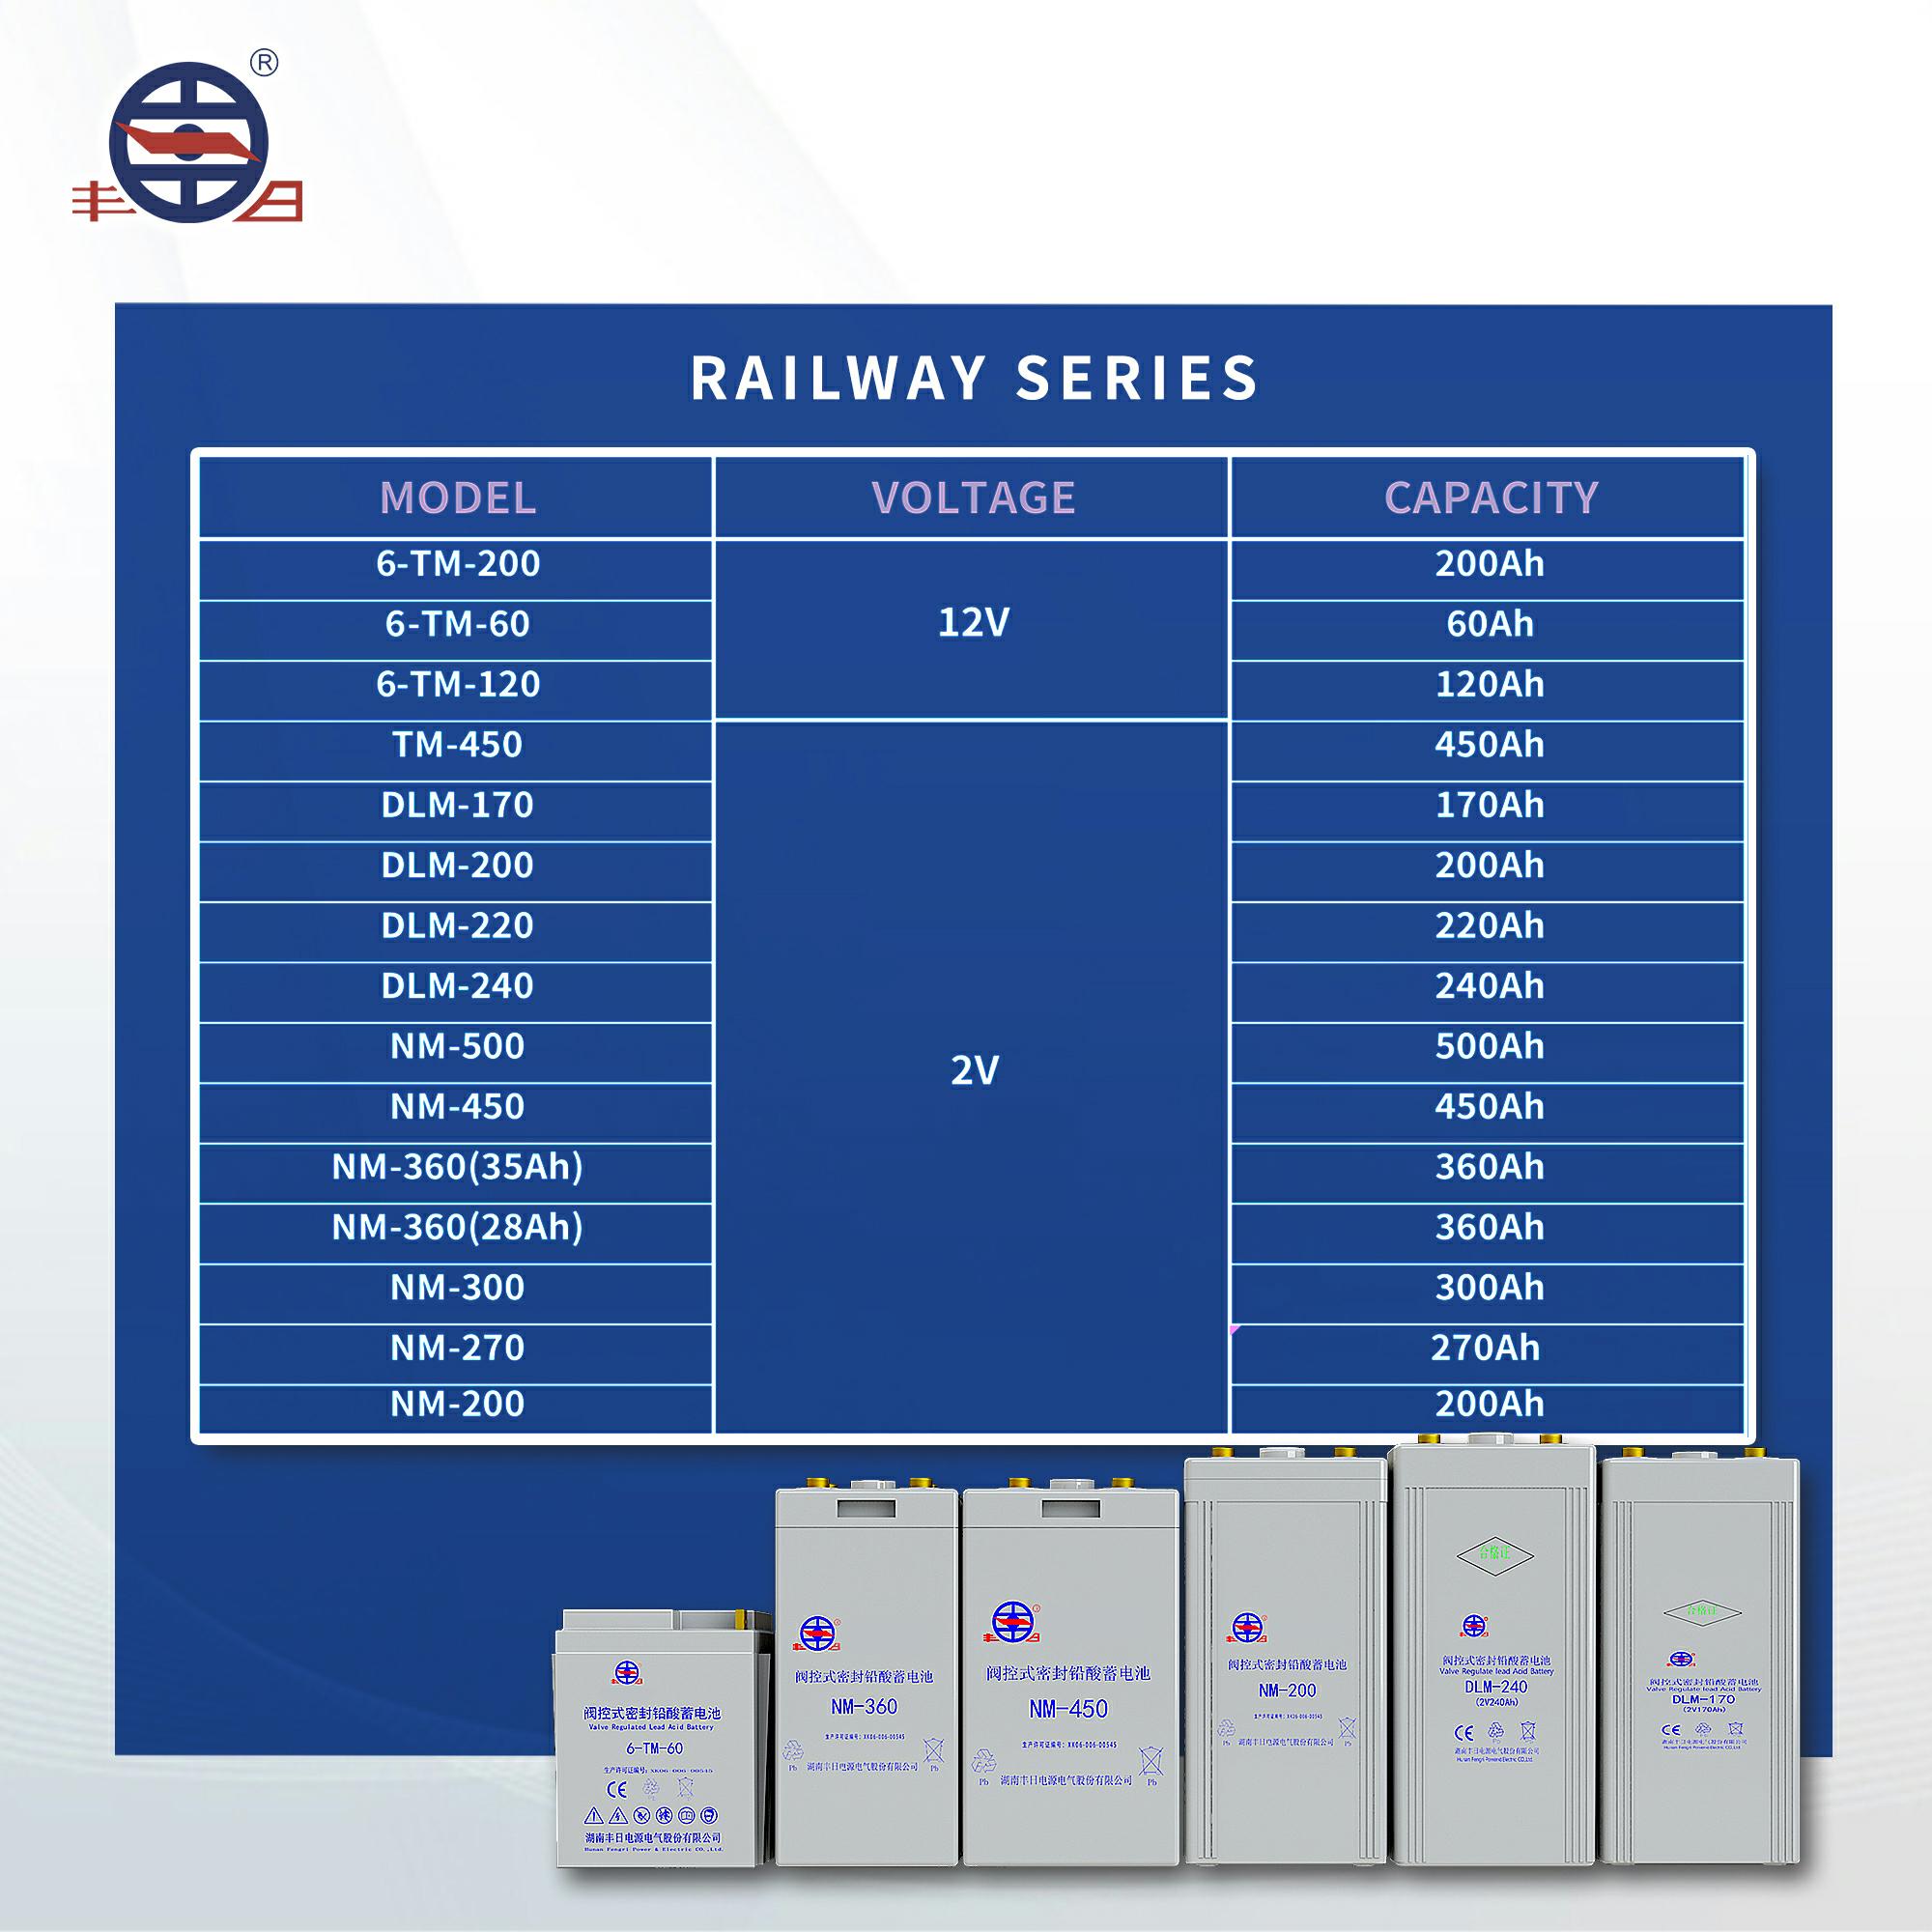 Bateria de chumbo-ácido regulada por válvula confiável para ferrovias